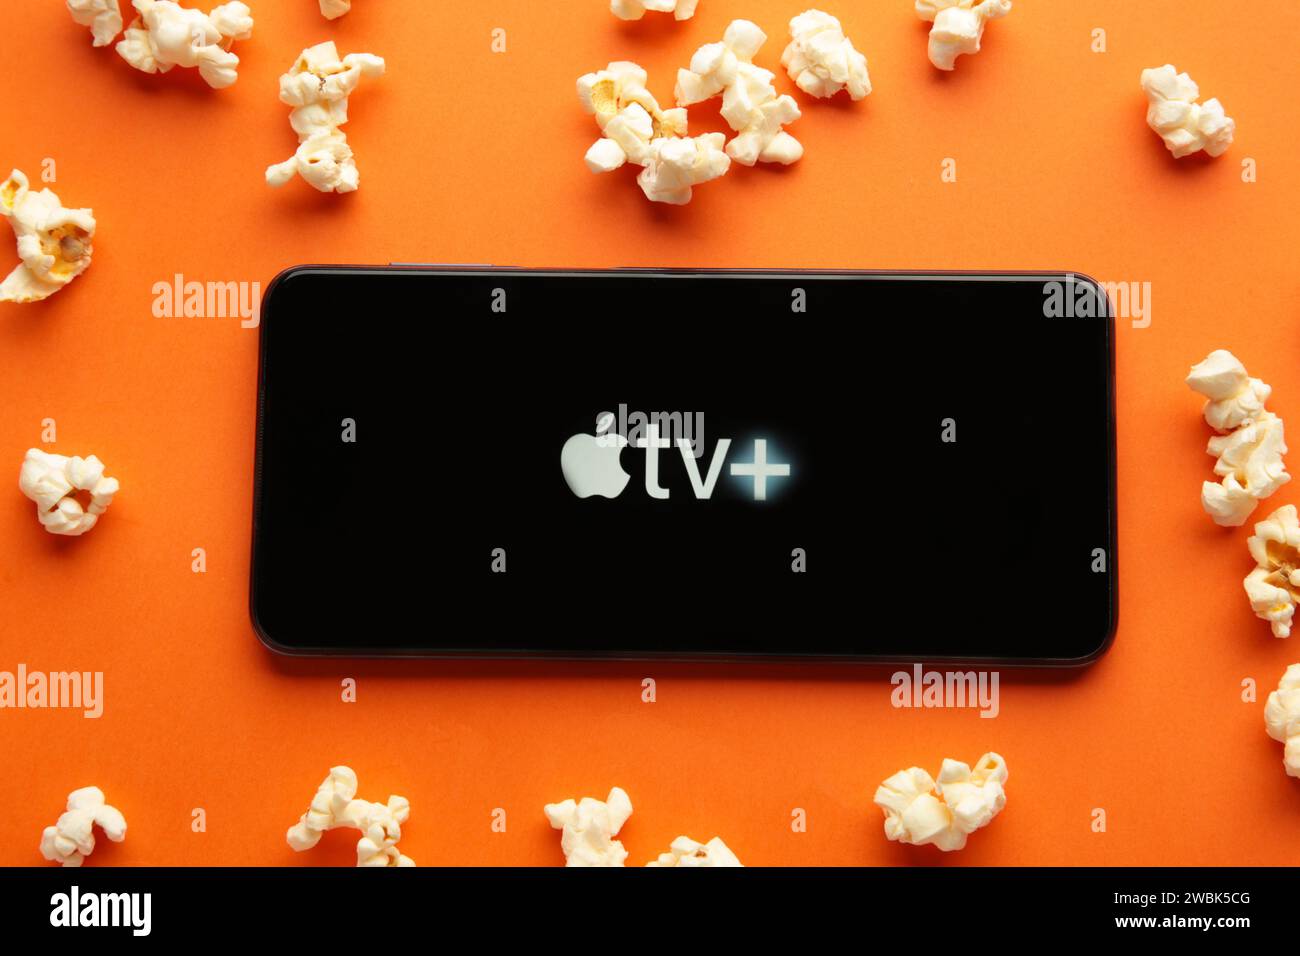 Nikolaev, Ucraina - 20 novembre 2021. Smartphone con logo Apple TV e popcorn su sfondo arancione. Vista dall'alto Foto Stock